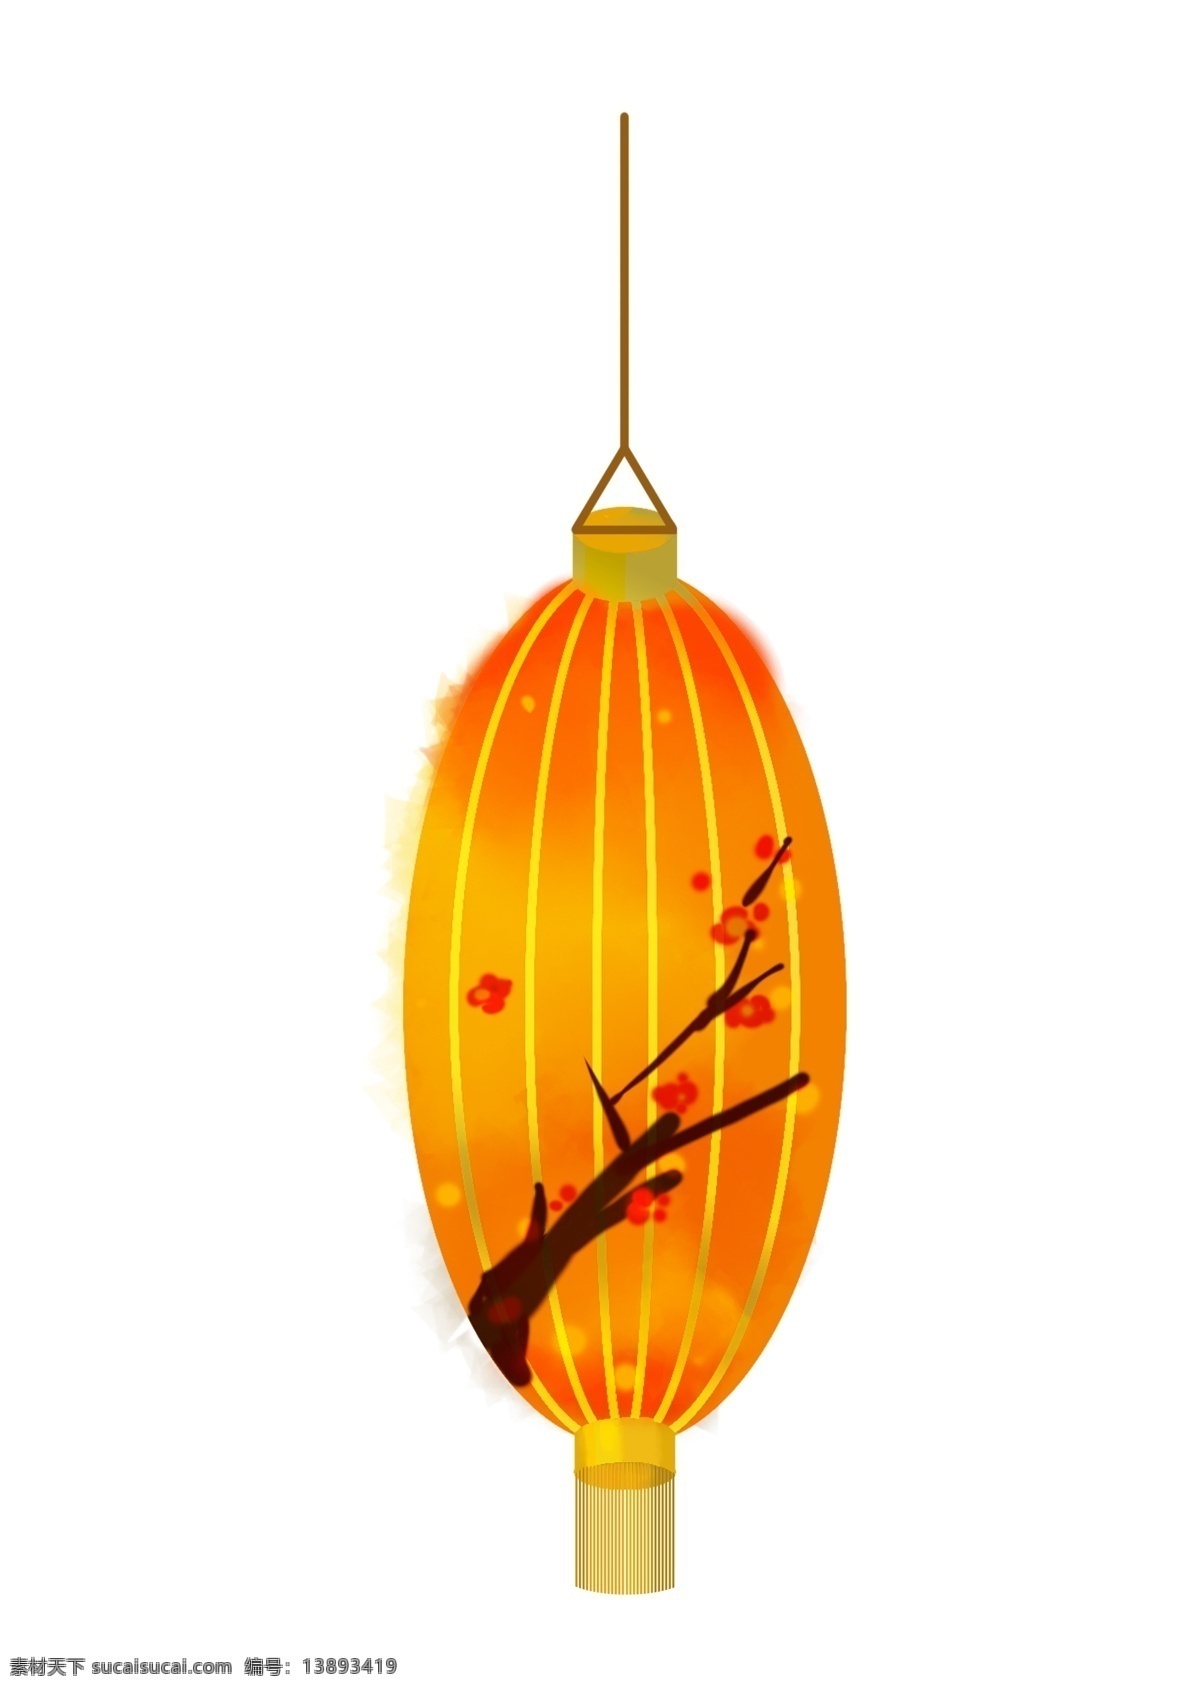 黄色 灯笼 手绘 插画 黄色的灯笼 手绘灯笼 灯笼挂饰 红色的小花 漂亮的灯笼 可爱的灯笼 褐色 树枝 装饰